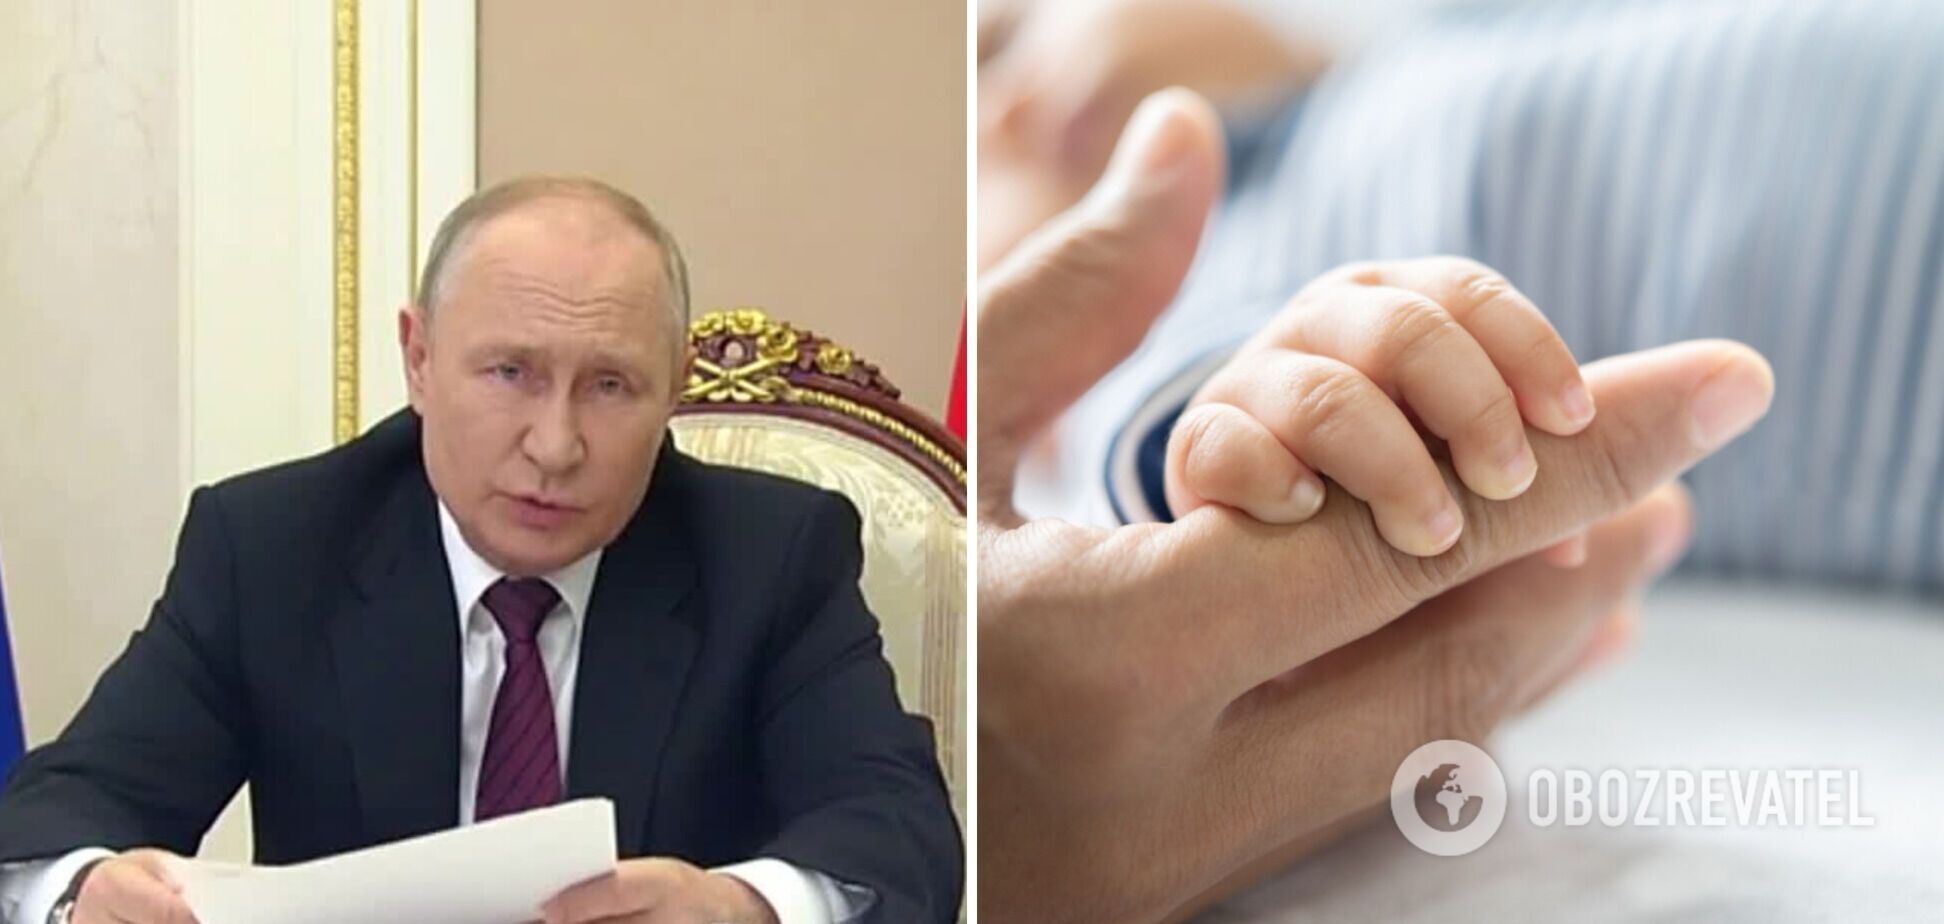 'Рождается все меньше детей': Путин забил тревогу из-за критической демографической ситуации в России. Видео